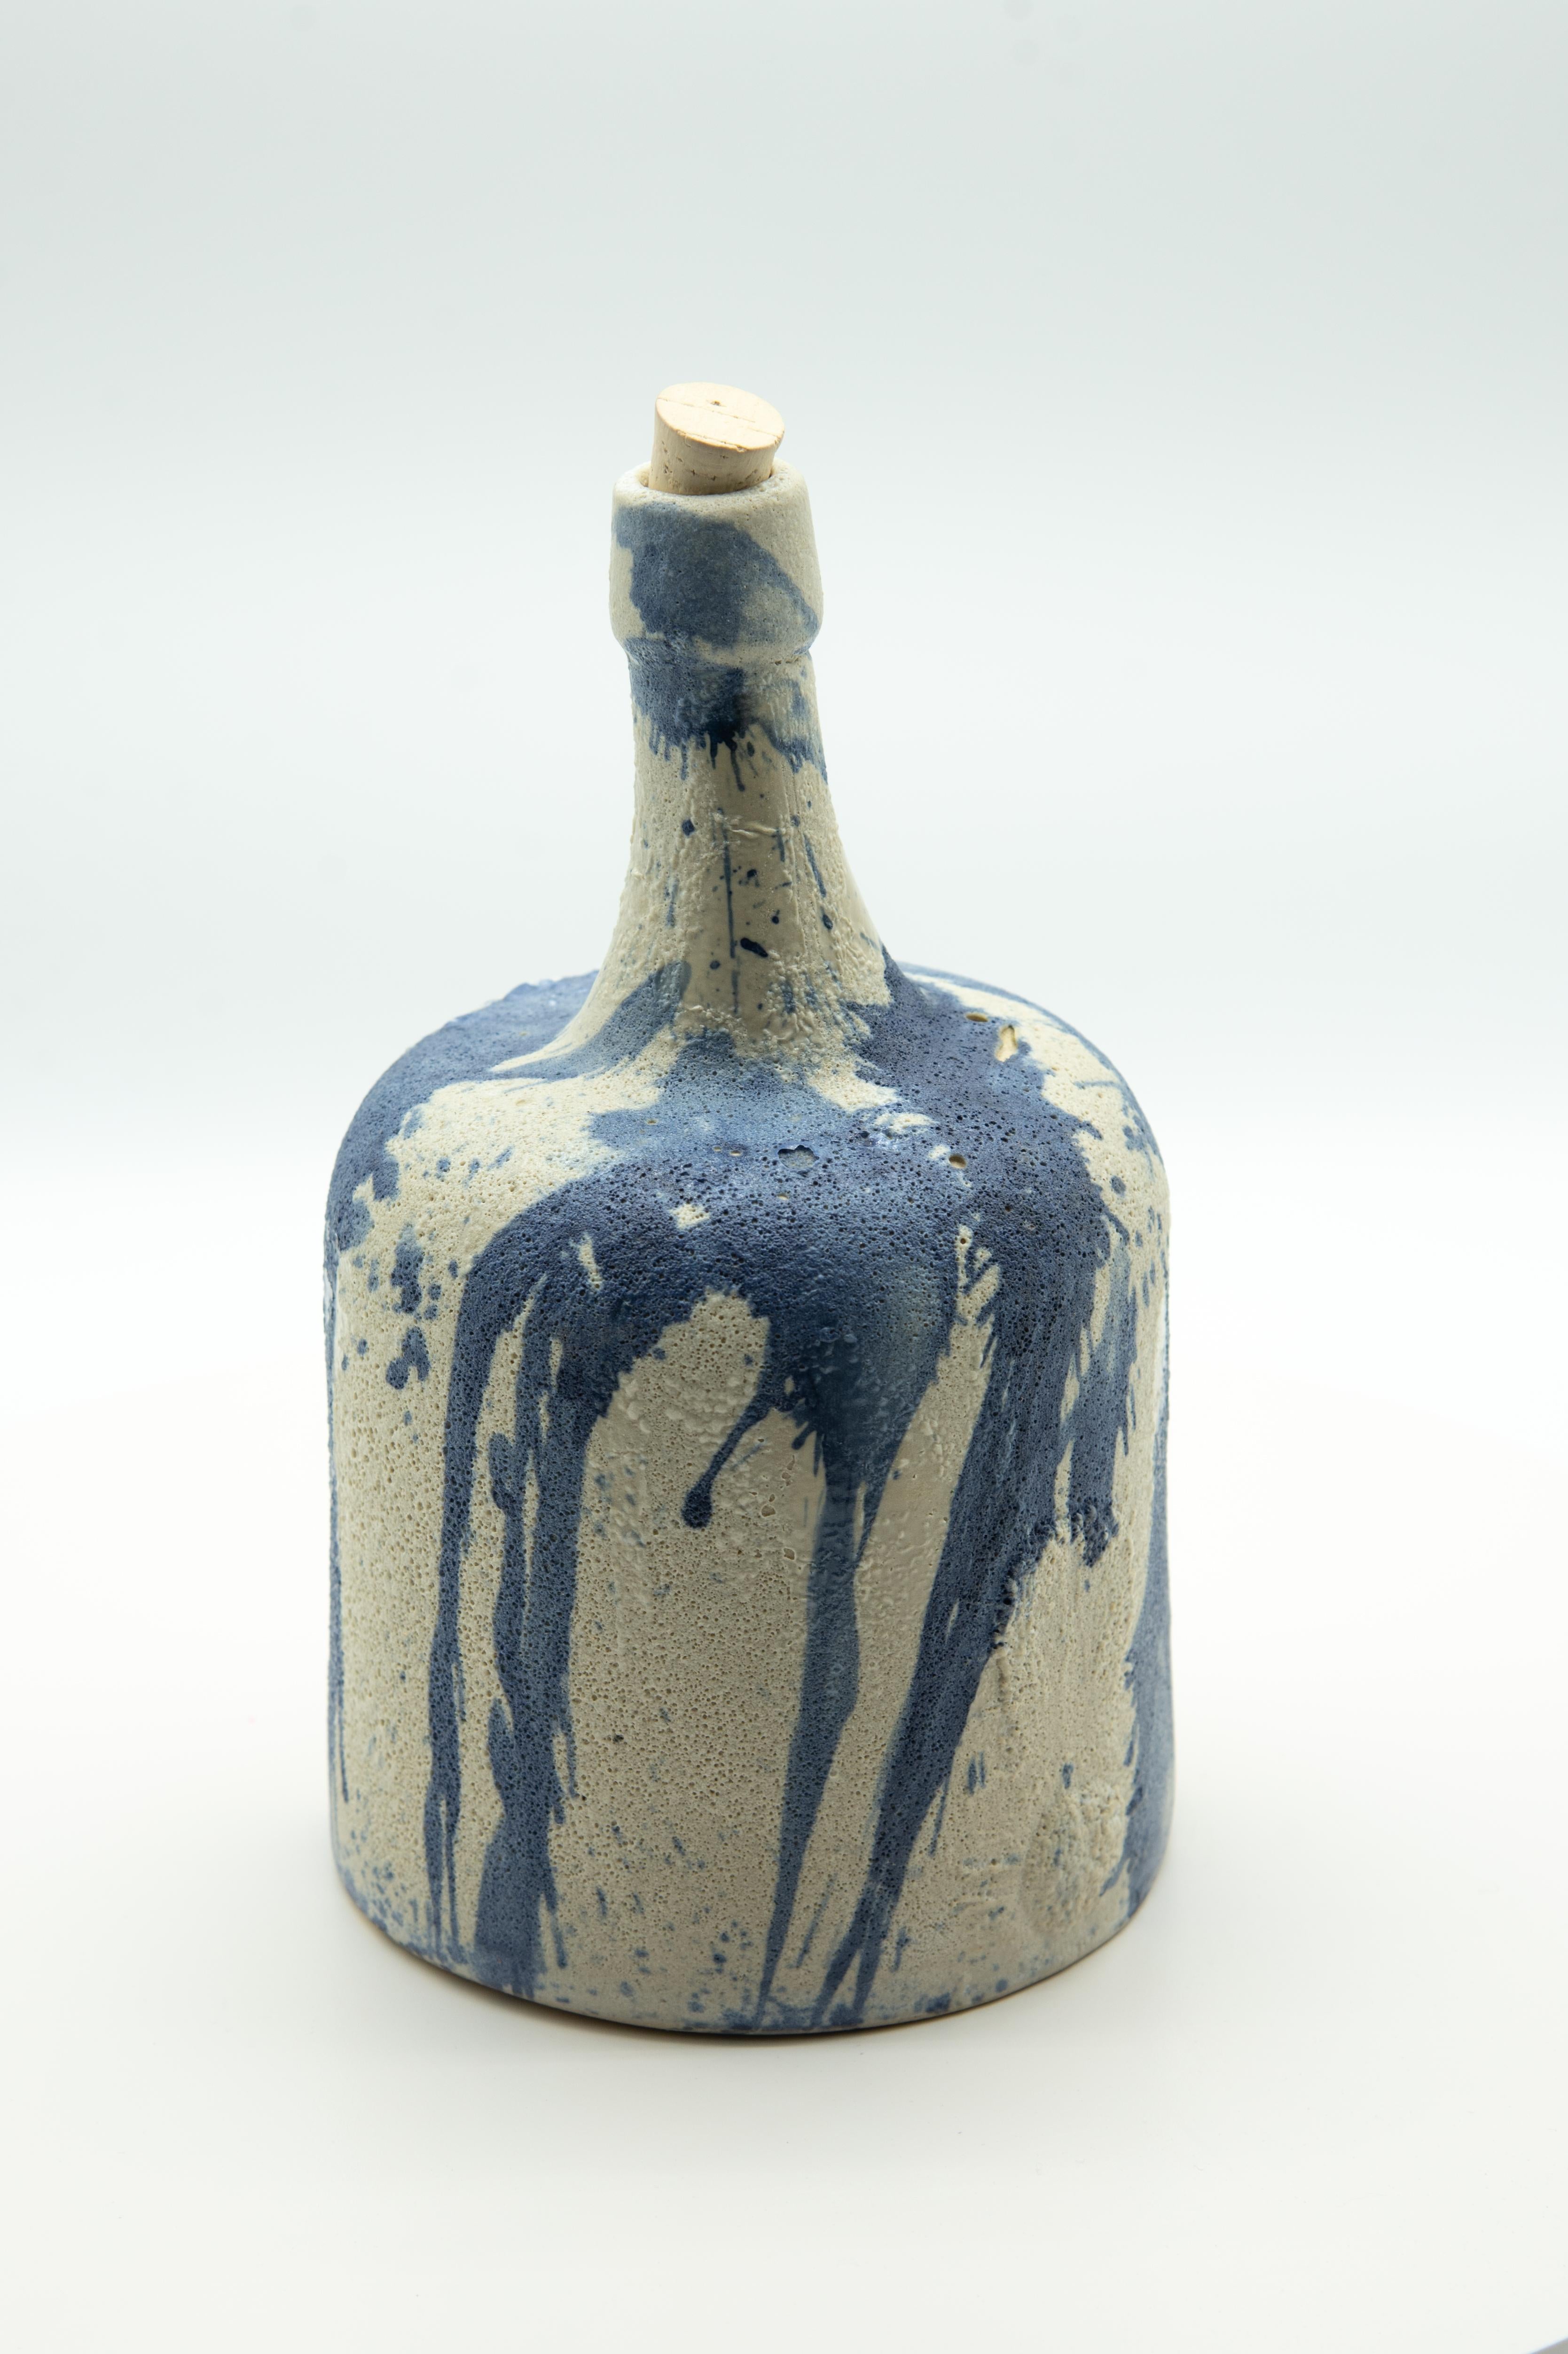 Cette bouteille de mezcal rustique est une réplique d'une bouteille ancienne ou demijohn qui était utilisée pour conserver le mezcal, bu lors des théâtres folkloriques d'Oaxaca, au Mexique. La bouteille en céramique est peinte au cobalt, ce qui lui